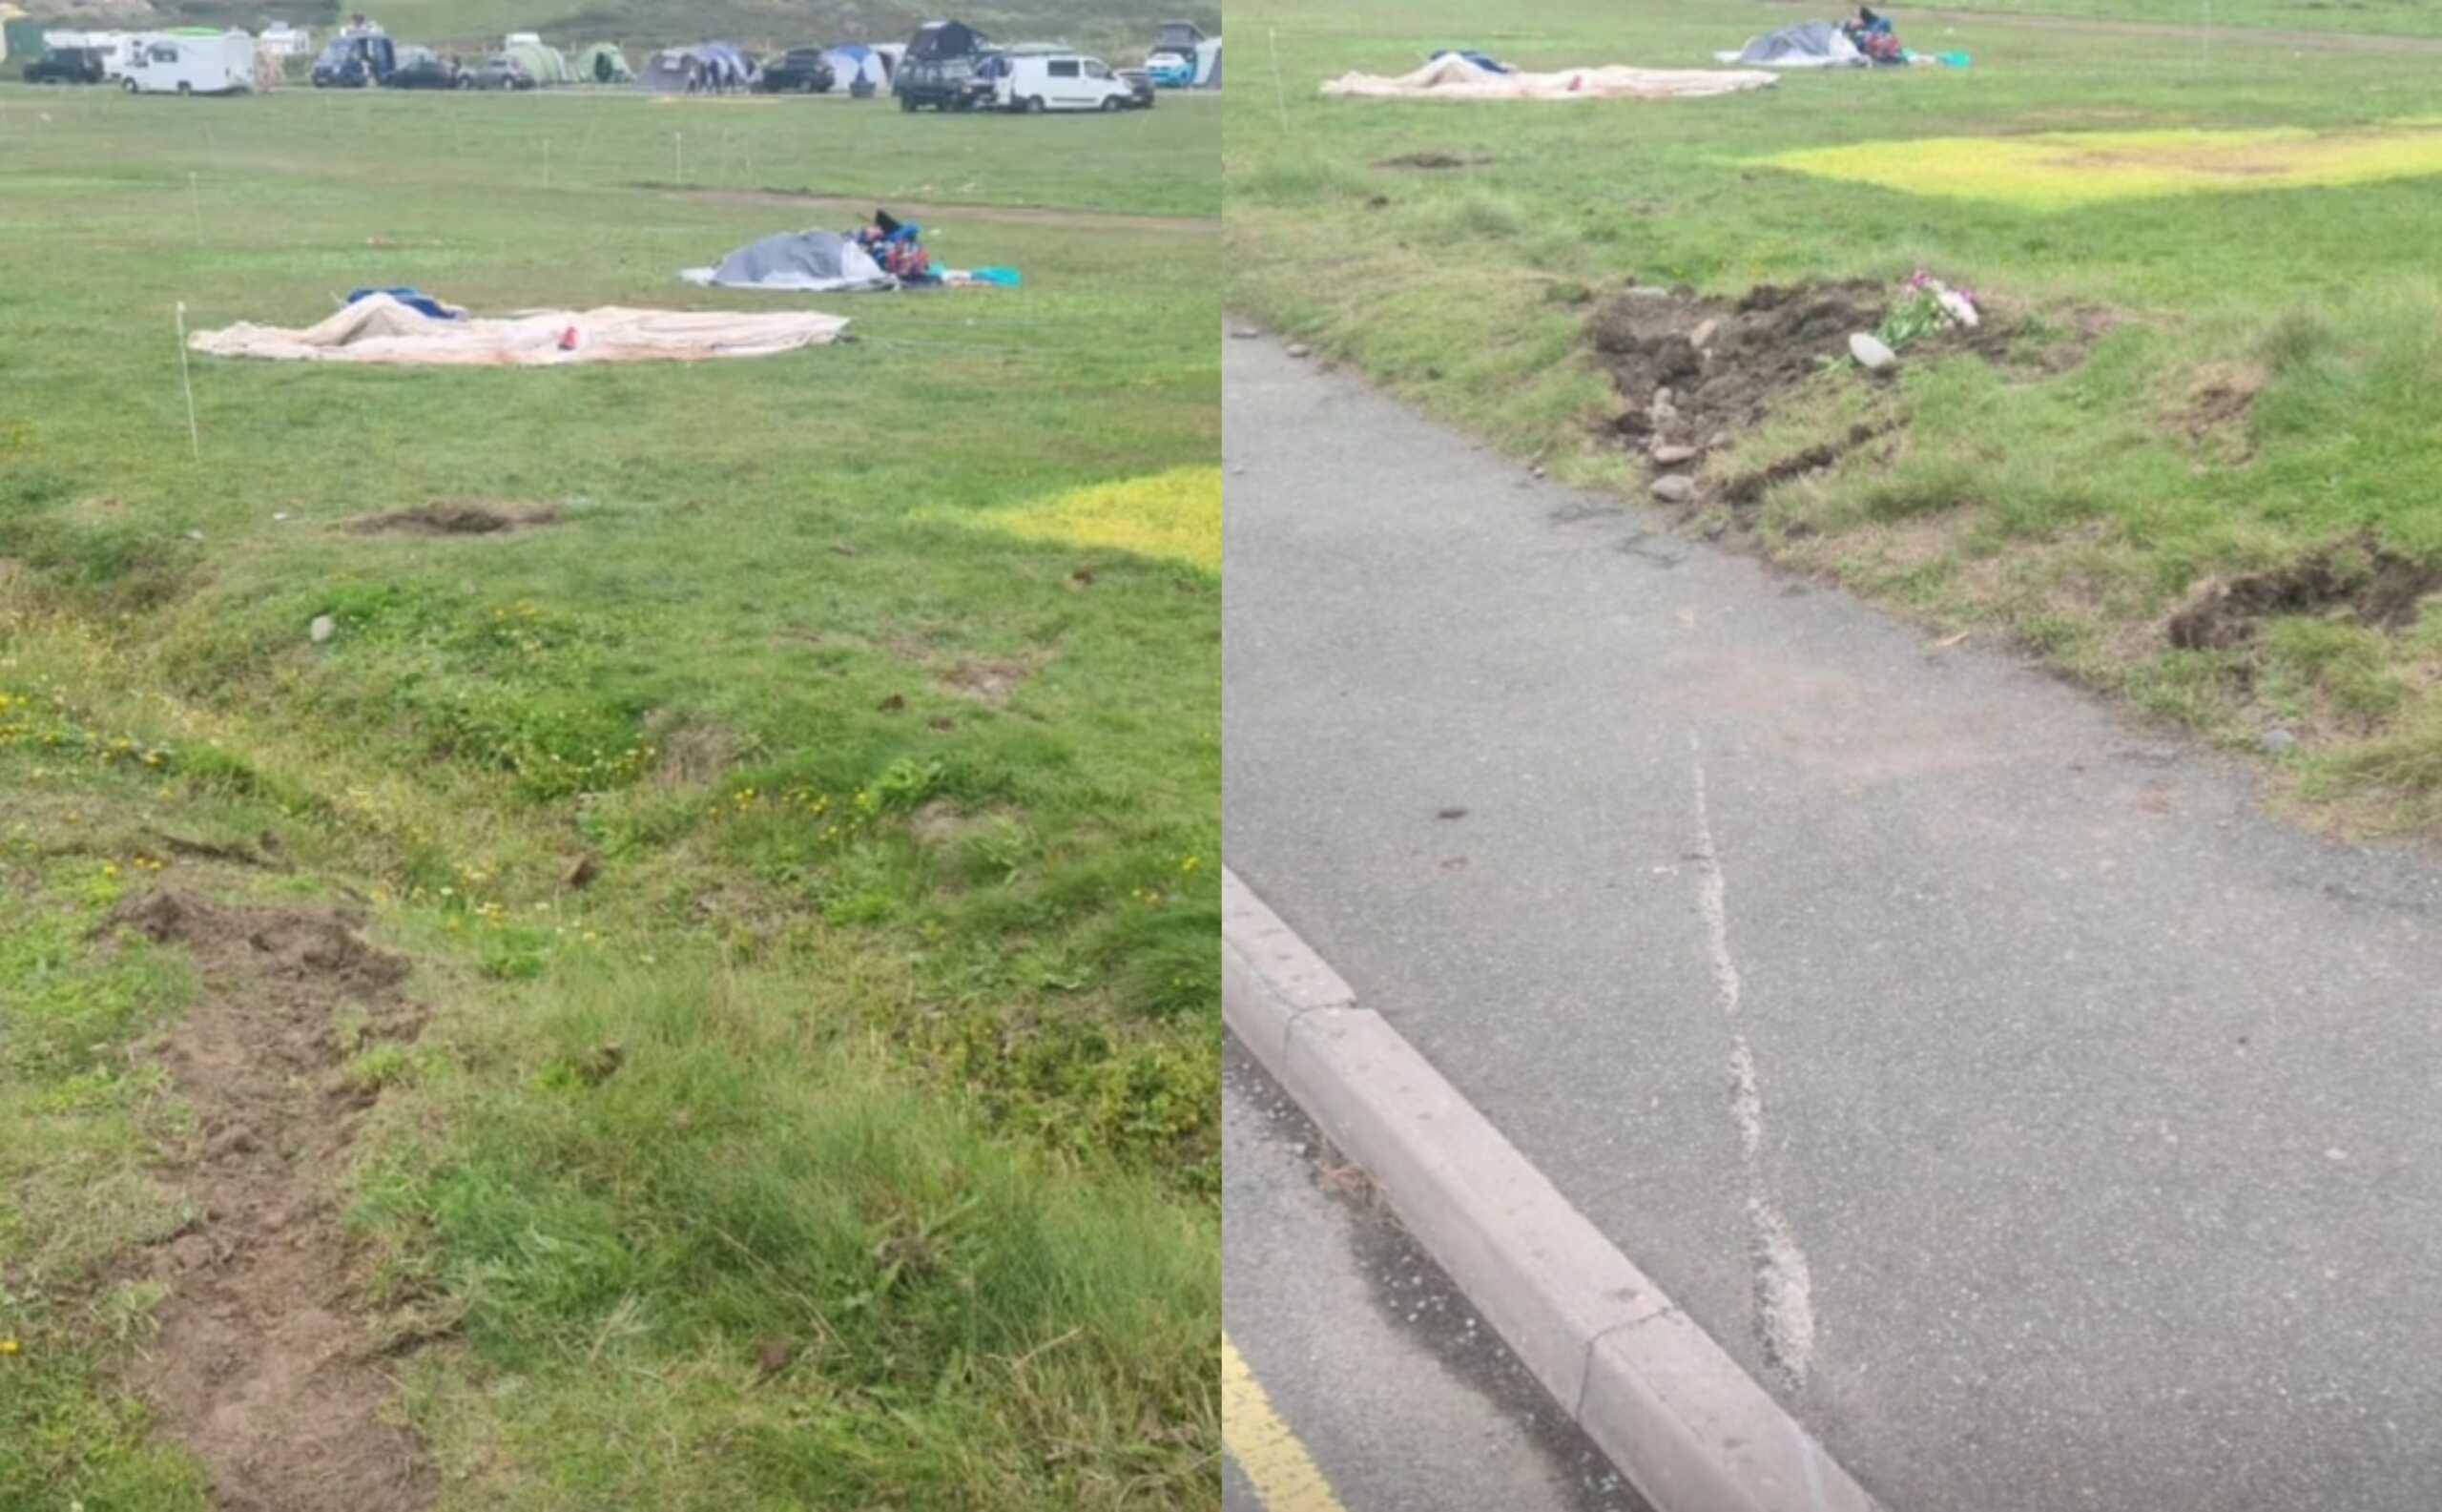 Ουαλία: Αυτοκίνητο έπεσε σε σκηνή κάμπινγκ, στην οποία υπήρχε και ένα μωρό